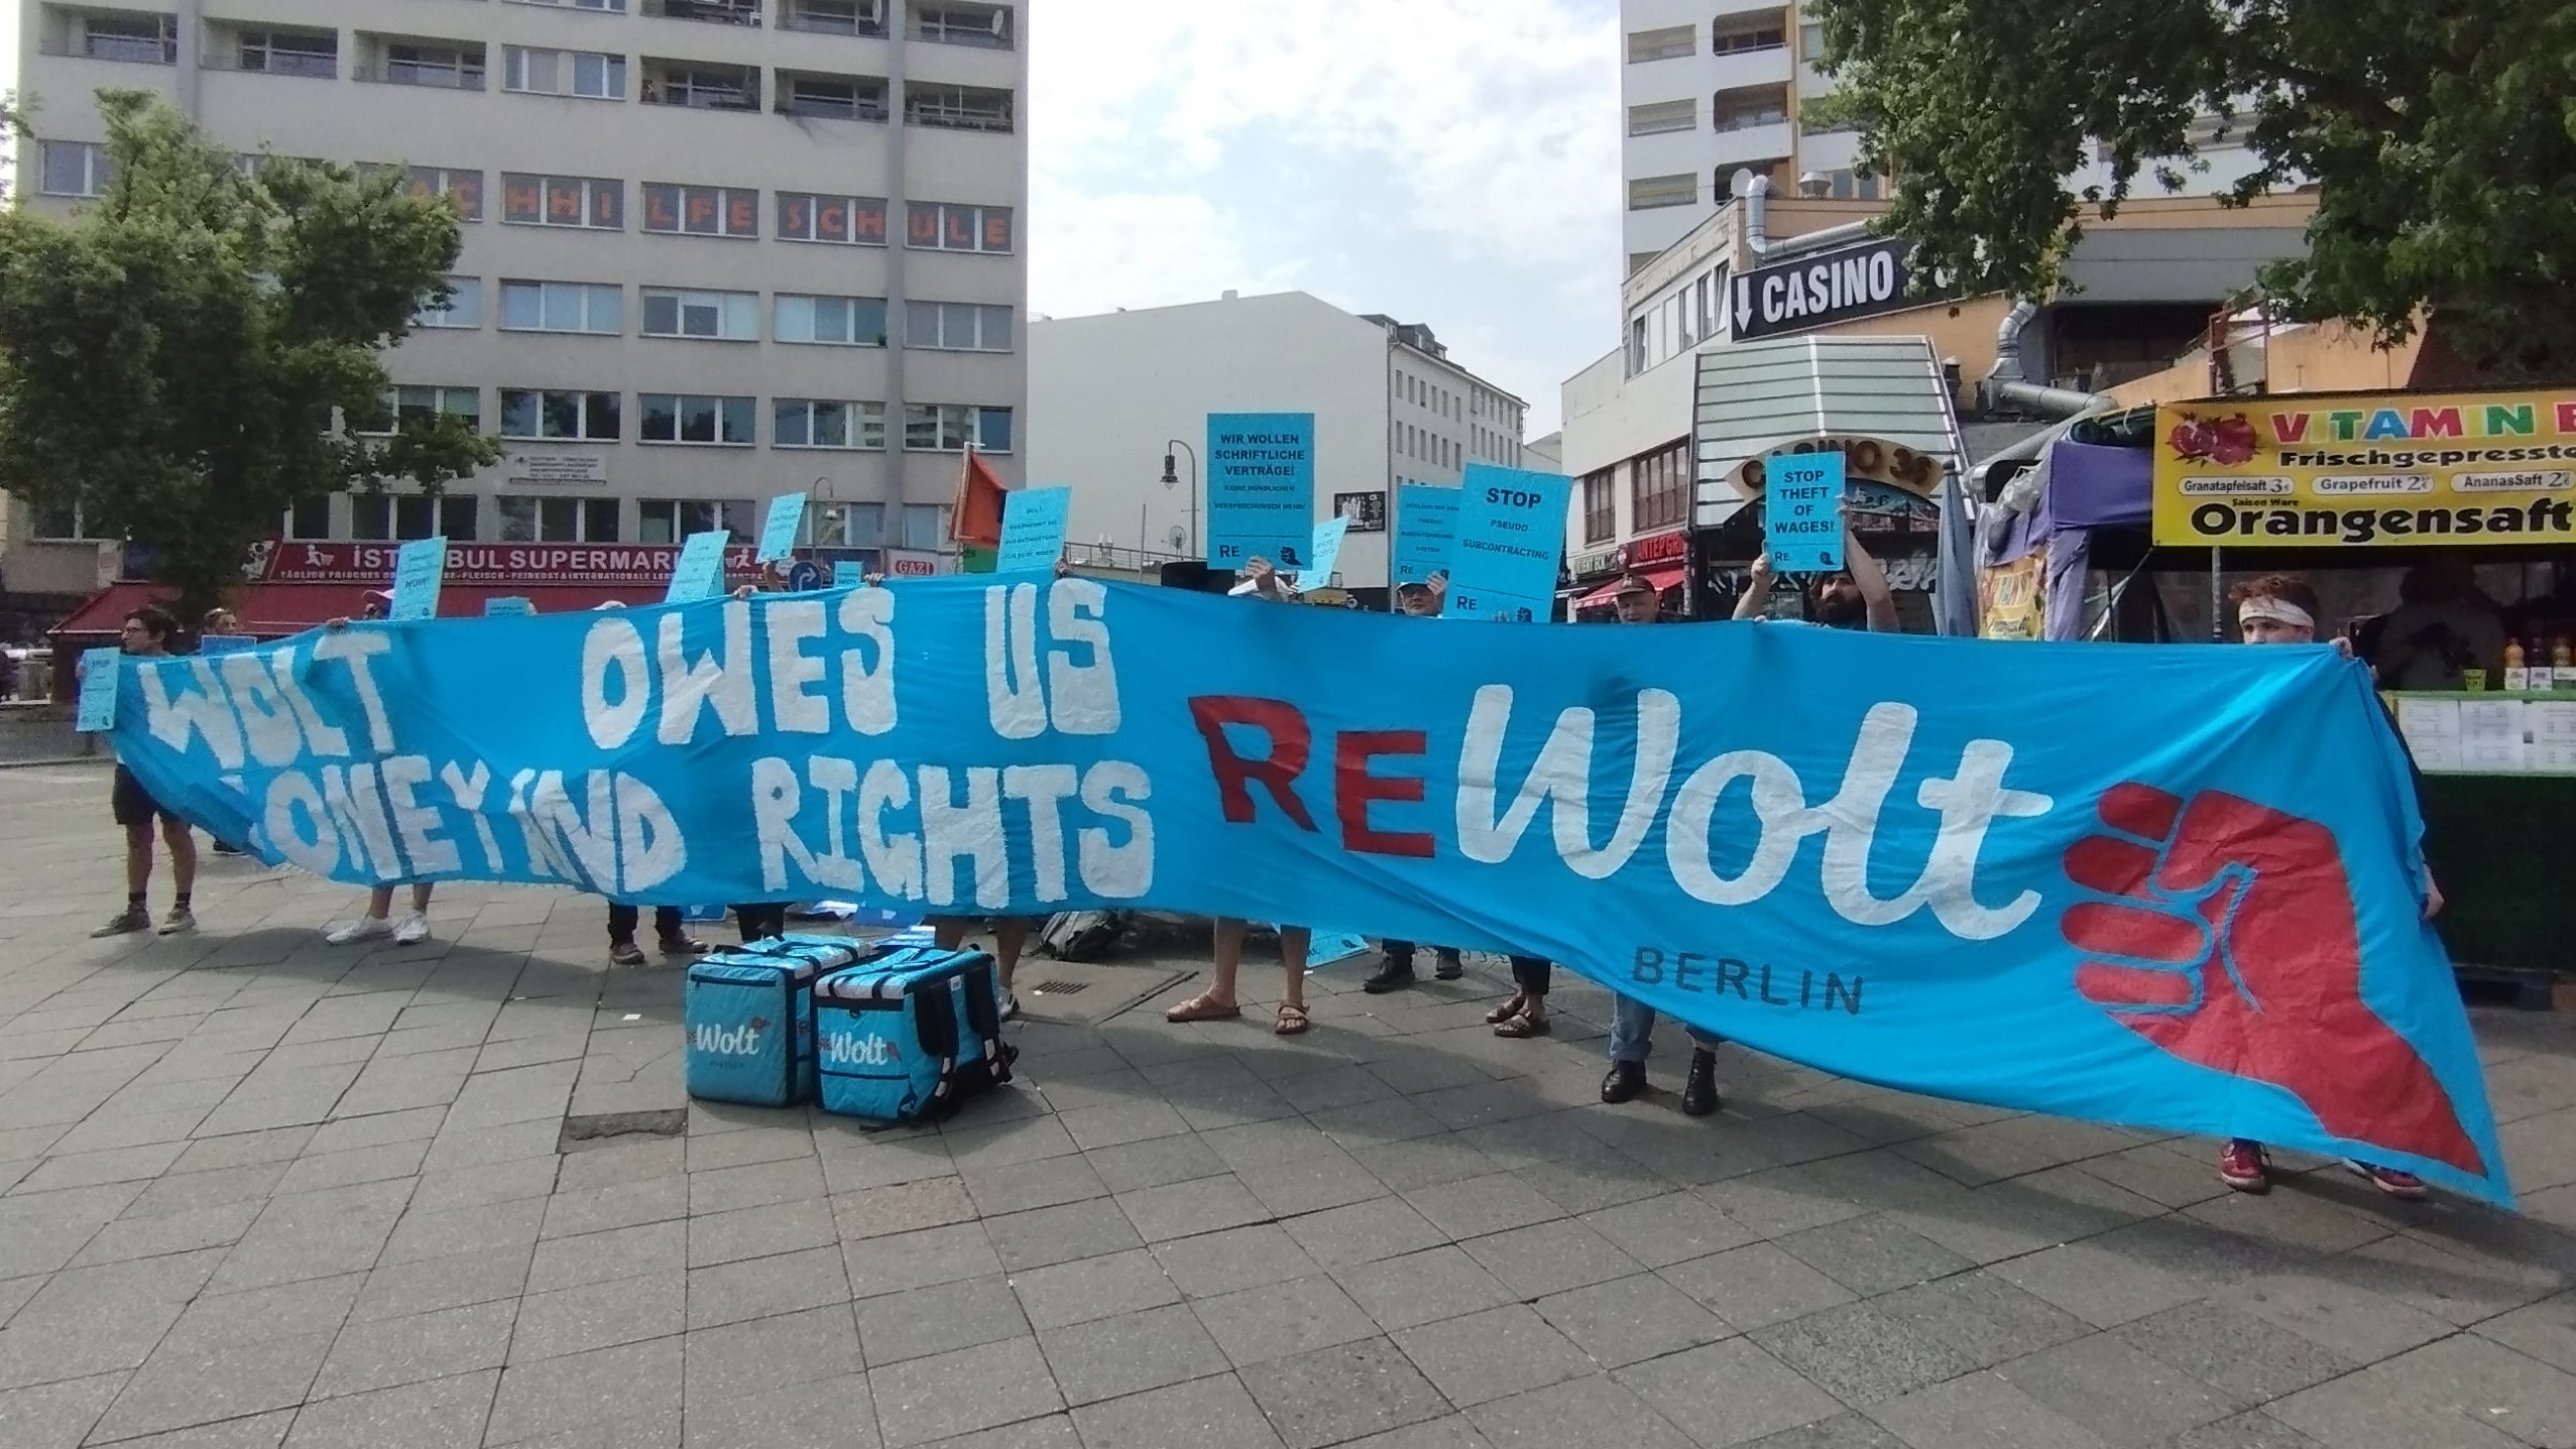 ReWolt protesters in Berlin (image: Minerwa Tahir)